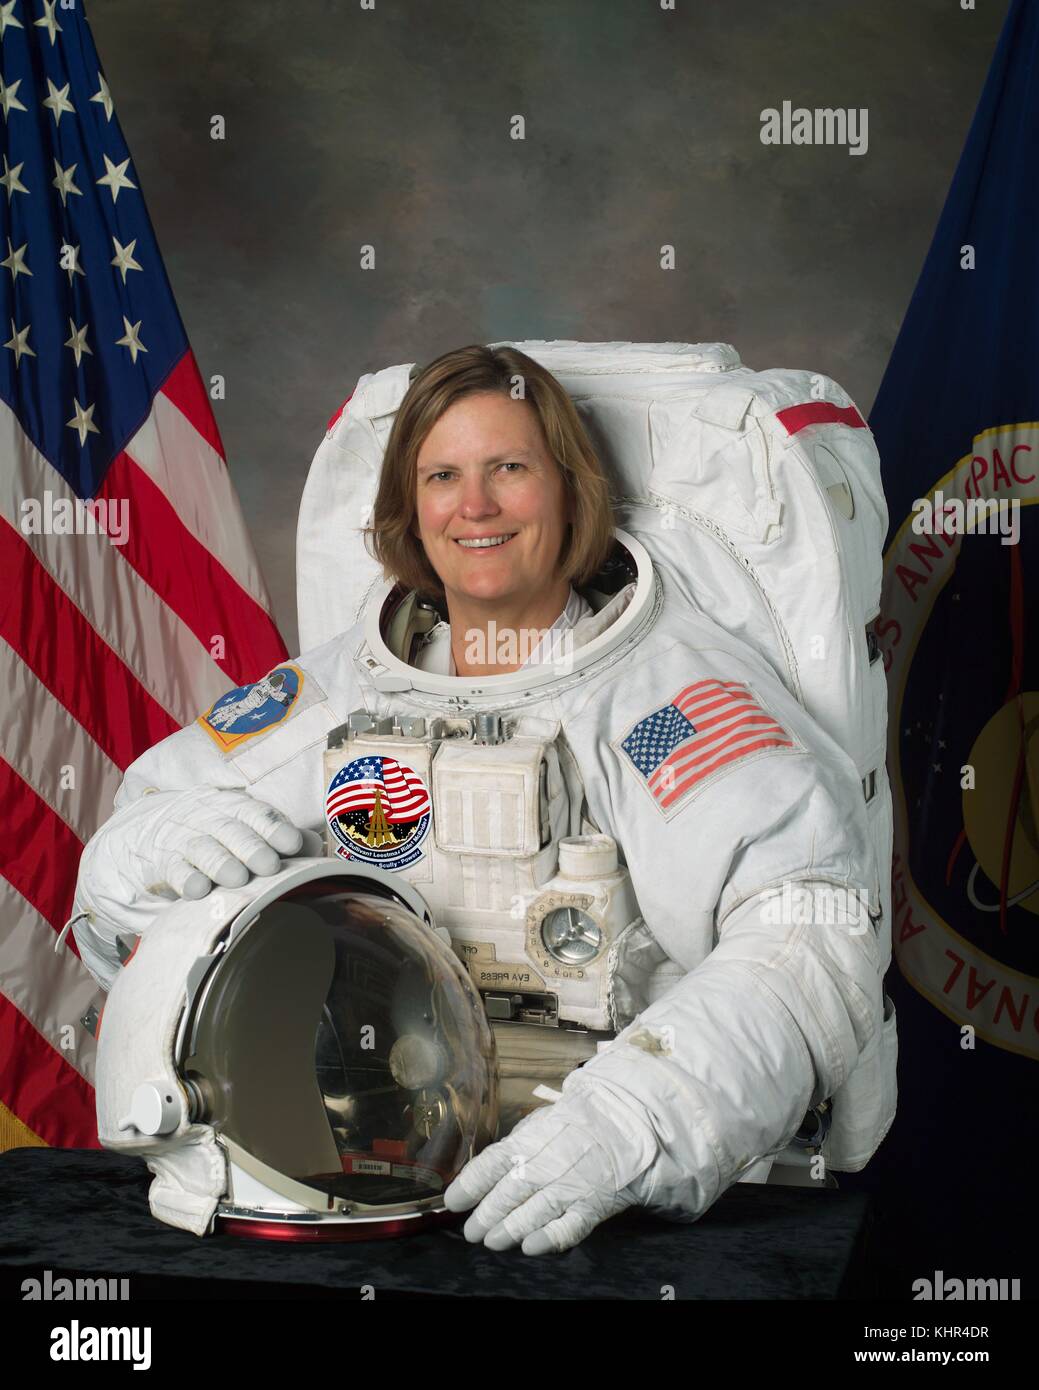 Ritratto ufficiale della NASA Space Shuttle STS-31, STS-41 e STS-45 astronauta missione kathryn sullivan in una tuta spaziale presso il Johnson Space Center luglio 25, 2003 a Houston, Texas. Alla sua prima missione, Sullivan è diventata la prima donna americana a camminare nello spazio. (Foto di foto nasa via planetpix) Foto Stock